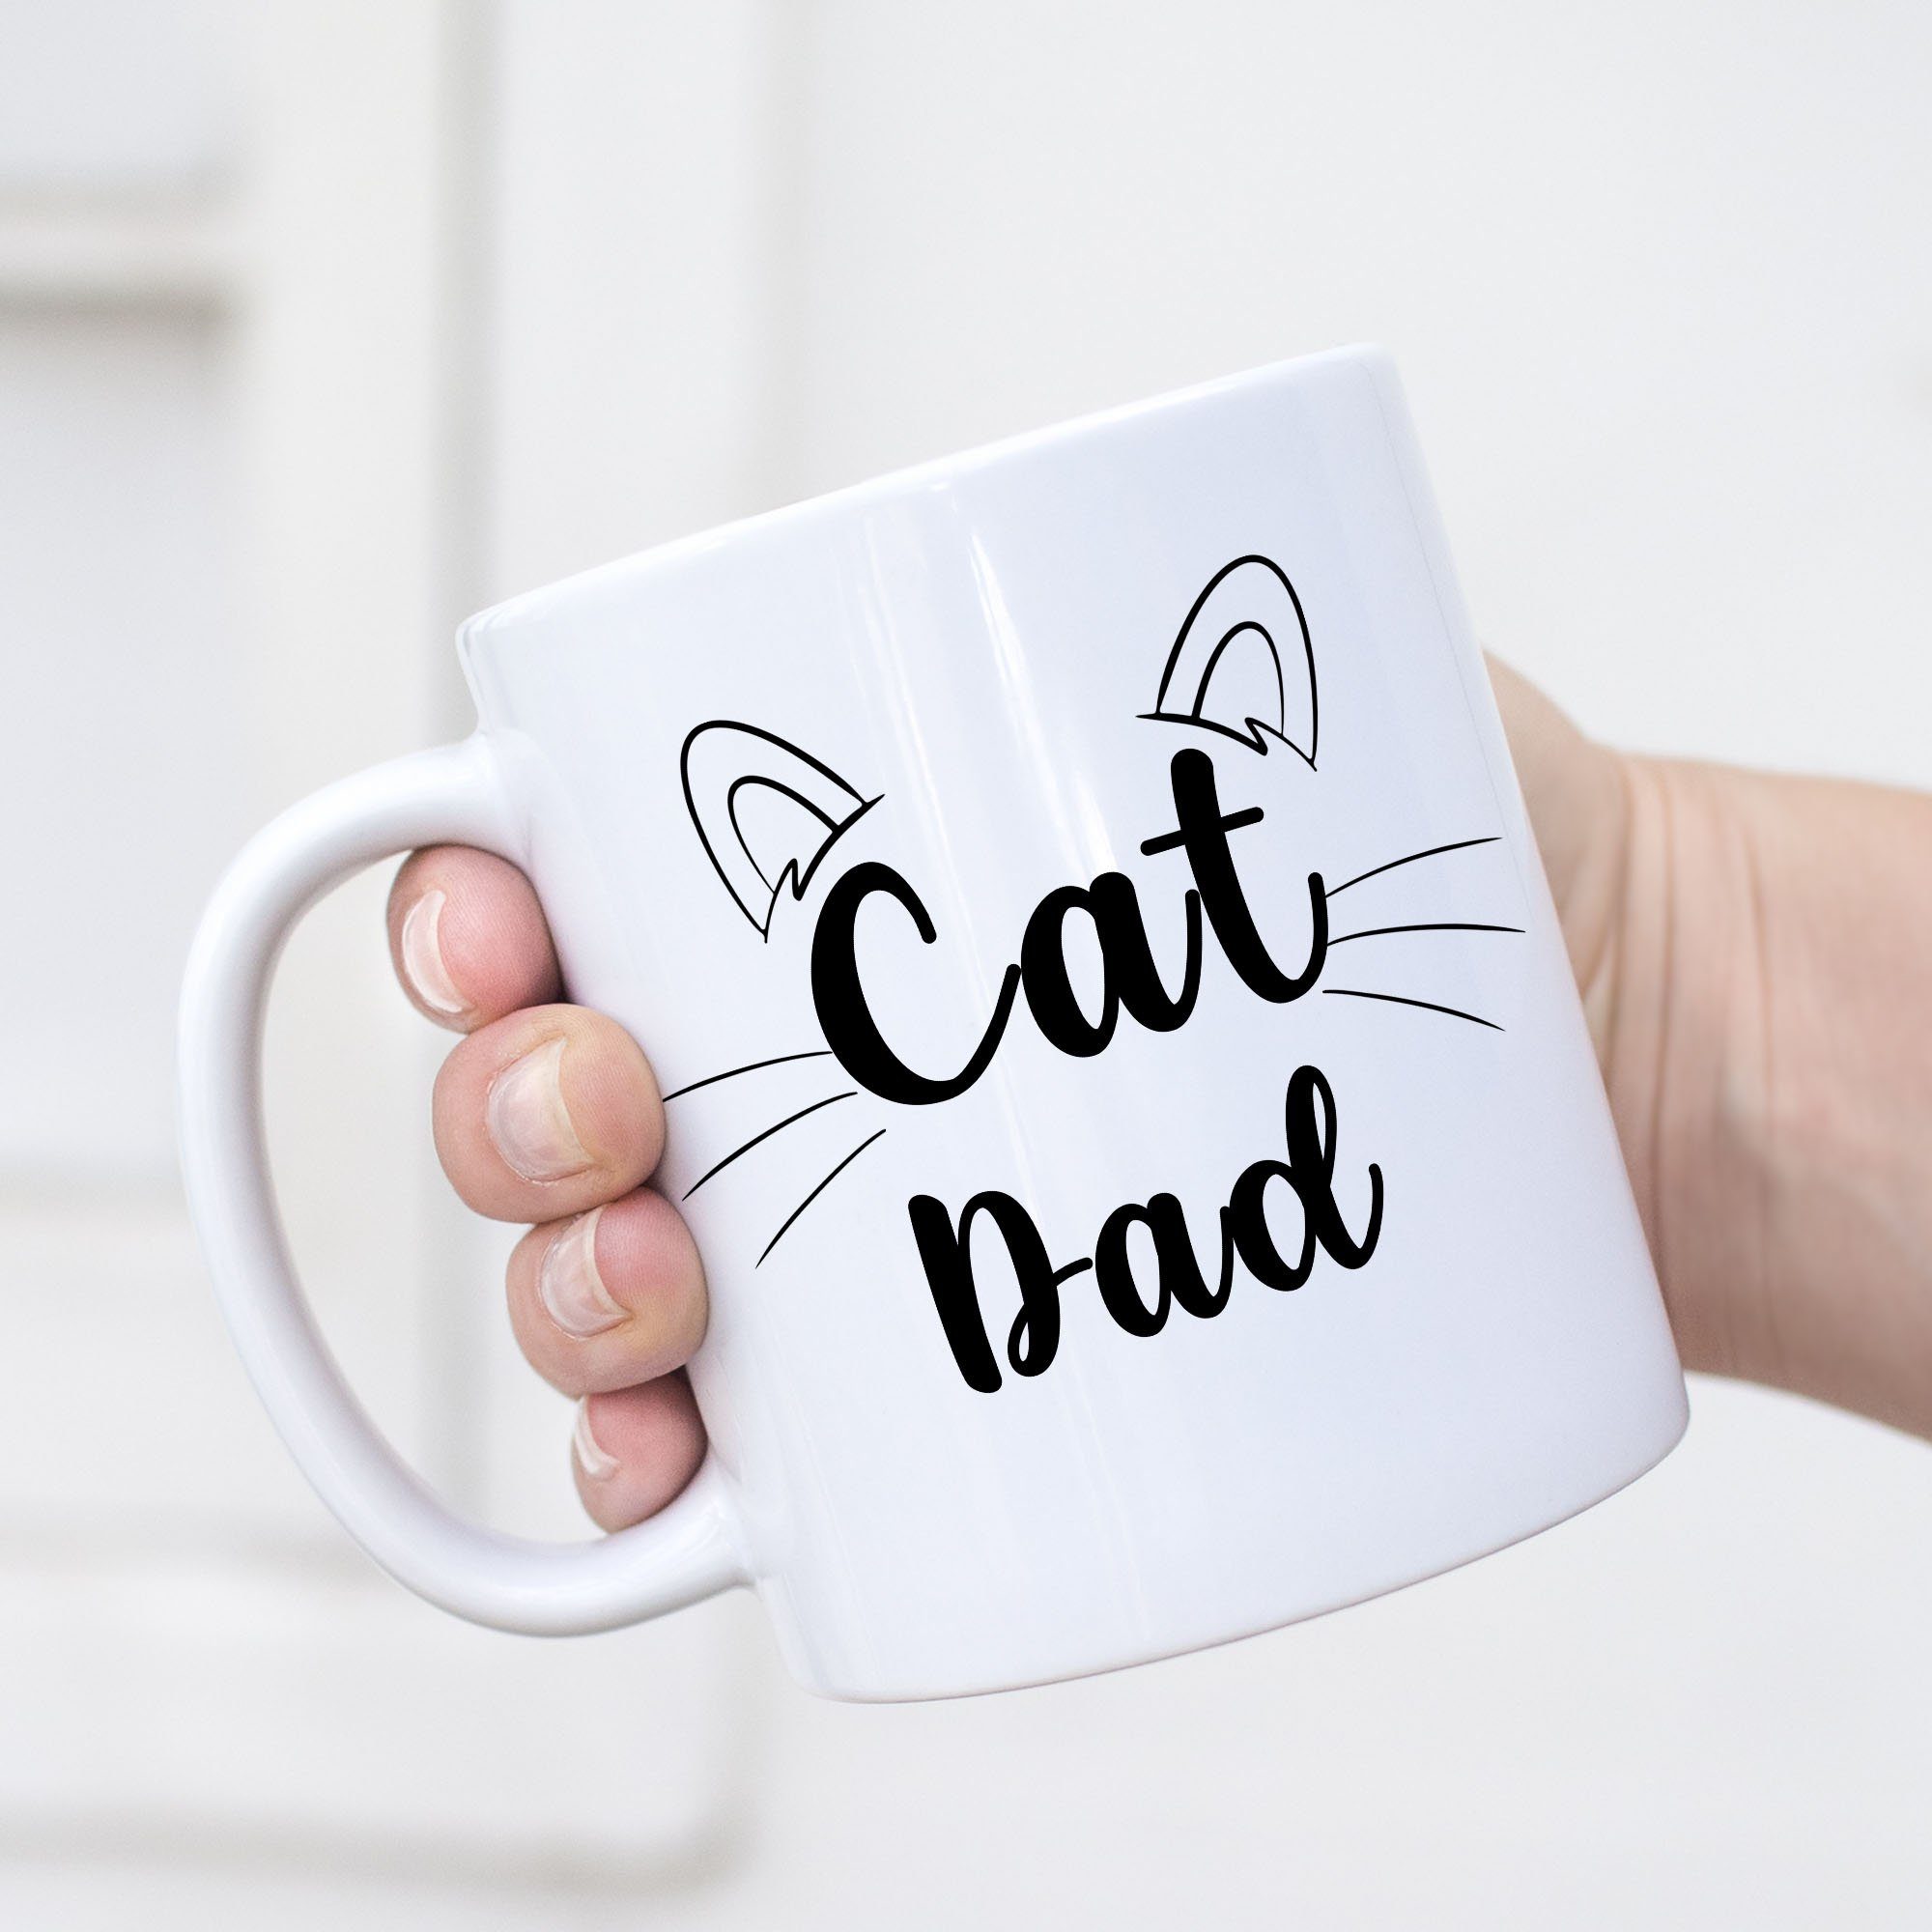 Weiß Katzenbesitzer Kaffeetasse, Keramik Geschenk Hey!Print Dad Tasse Tasse Katzen-Papa Katzen Katzenliebhaber Kätzchen Cat